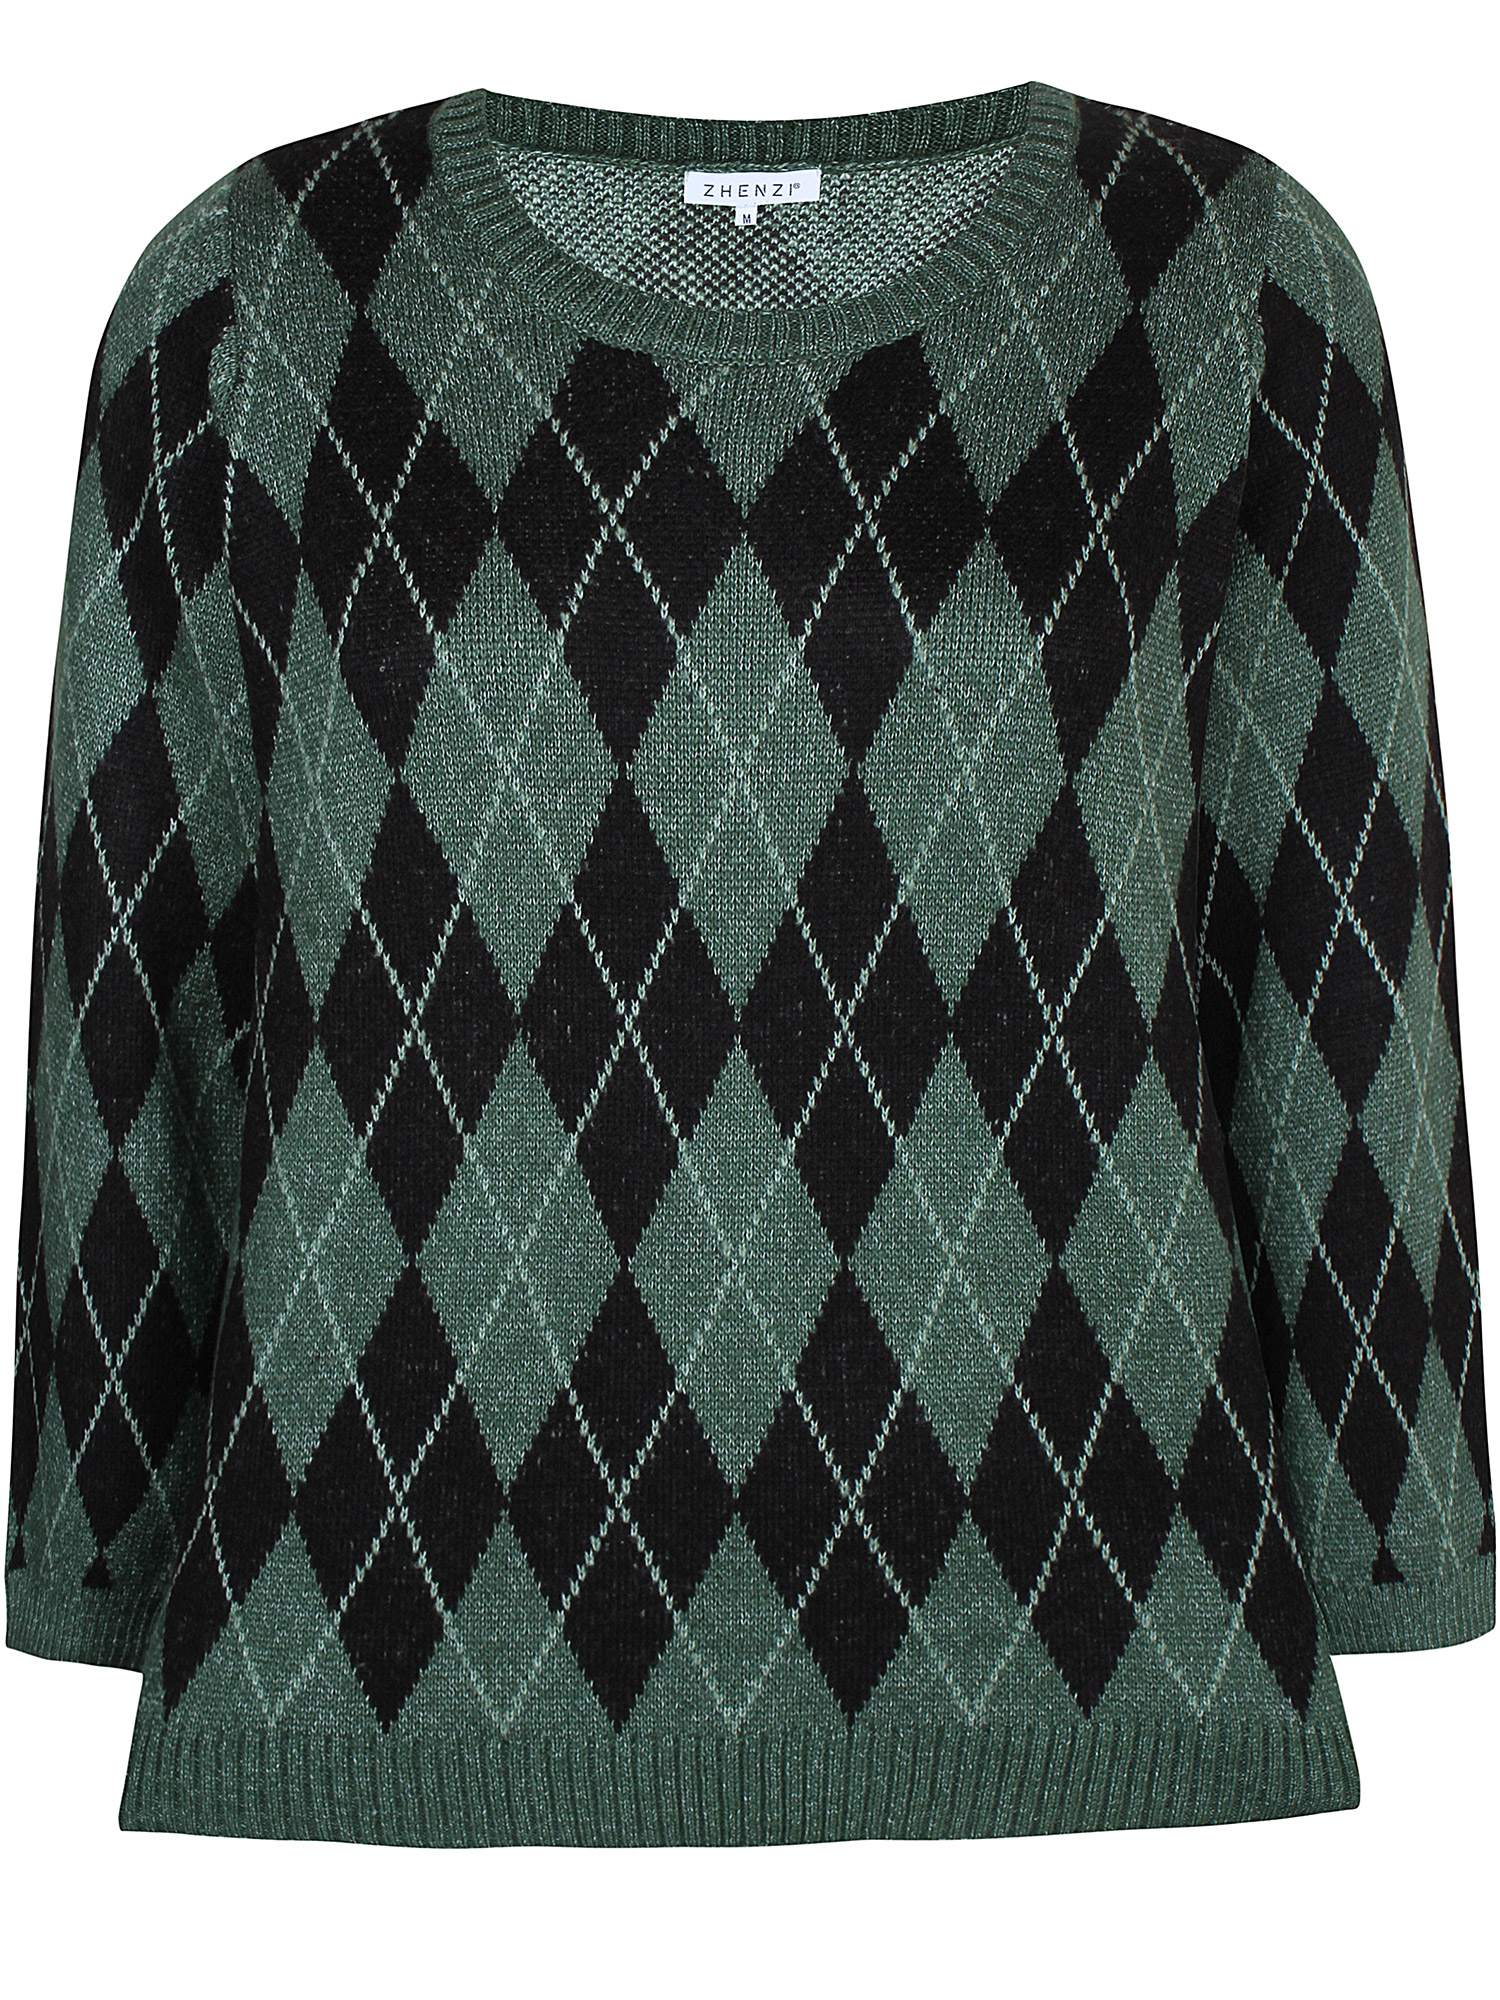 Pave - strikket genser med grønne og svarte ruter fra Zhenzi